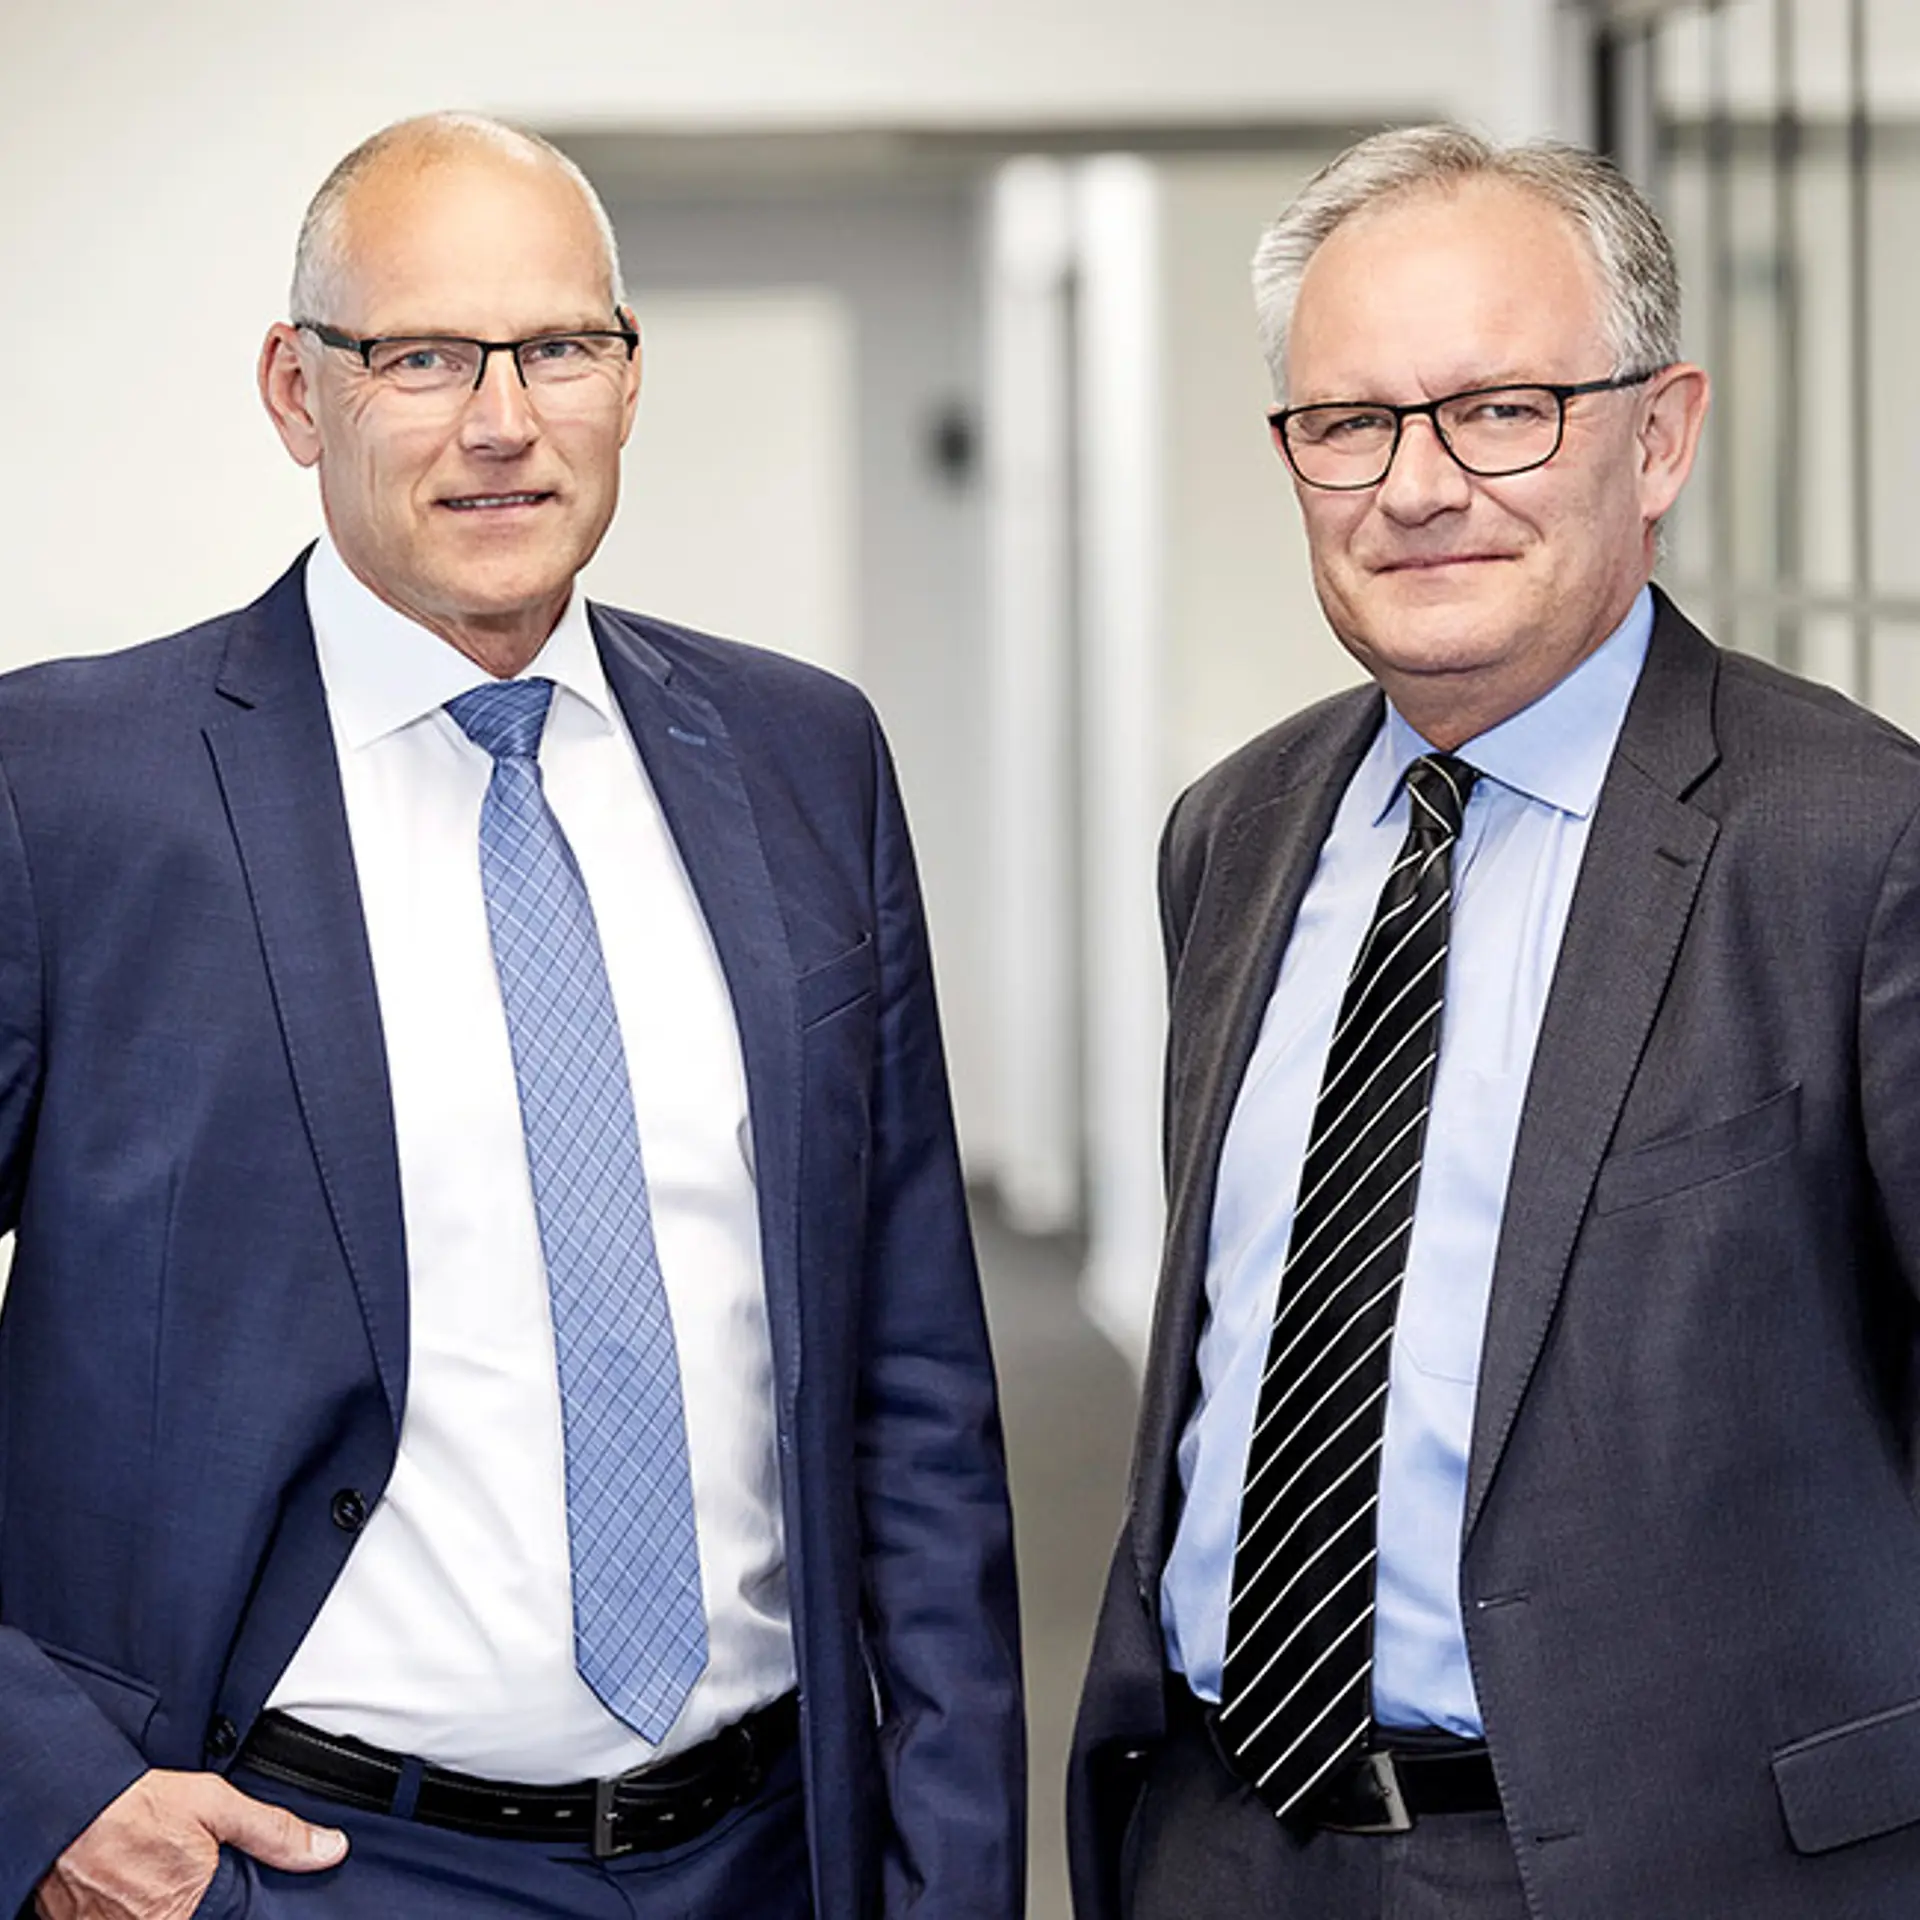 adm bankdirektør Jan Ulsø Madsen står sammen med bankdirektør Michael Nelander Petersen i Vestjysk Bank